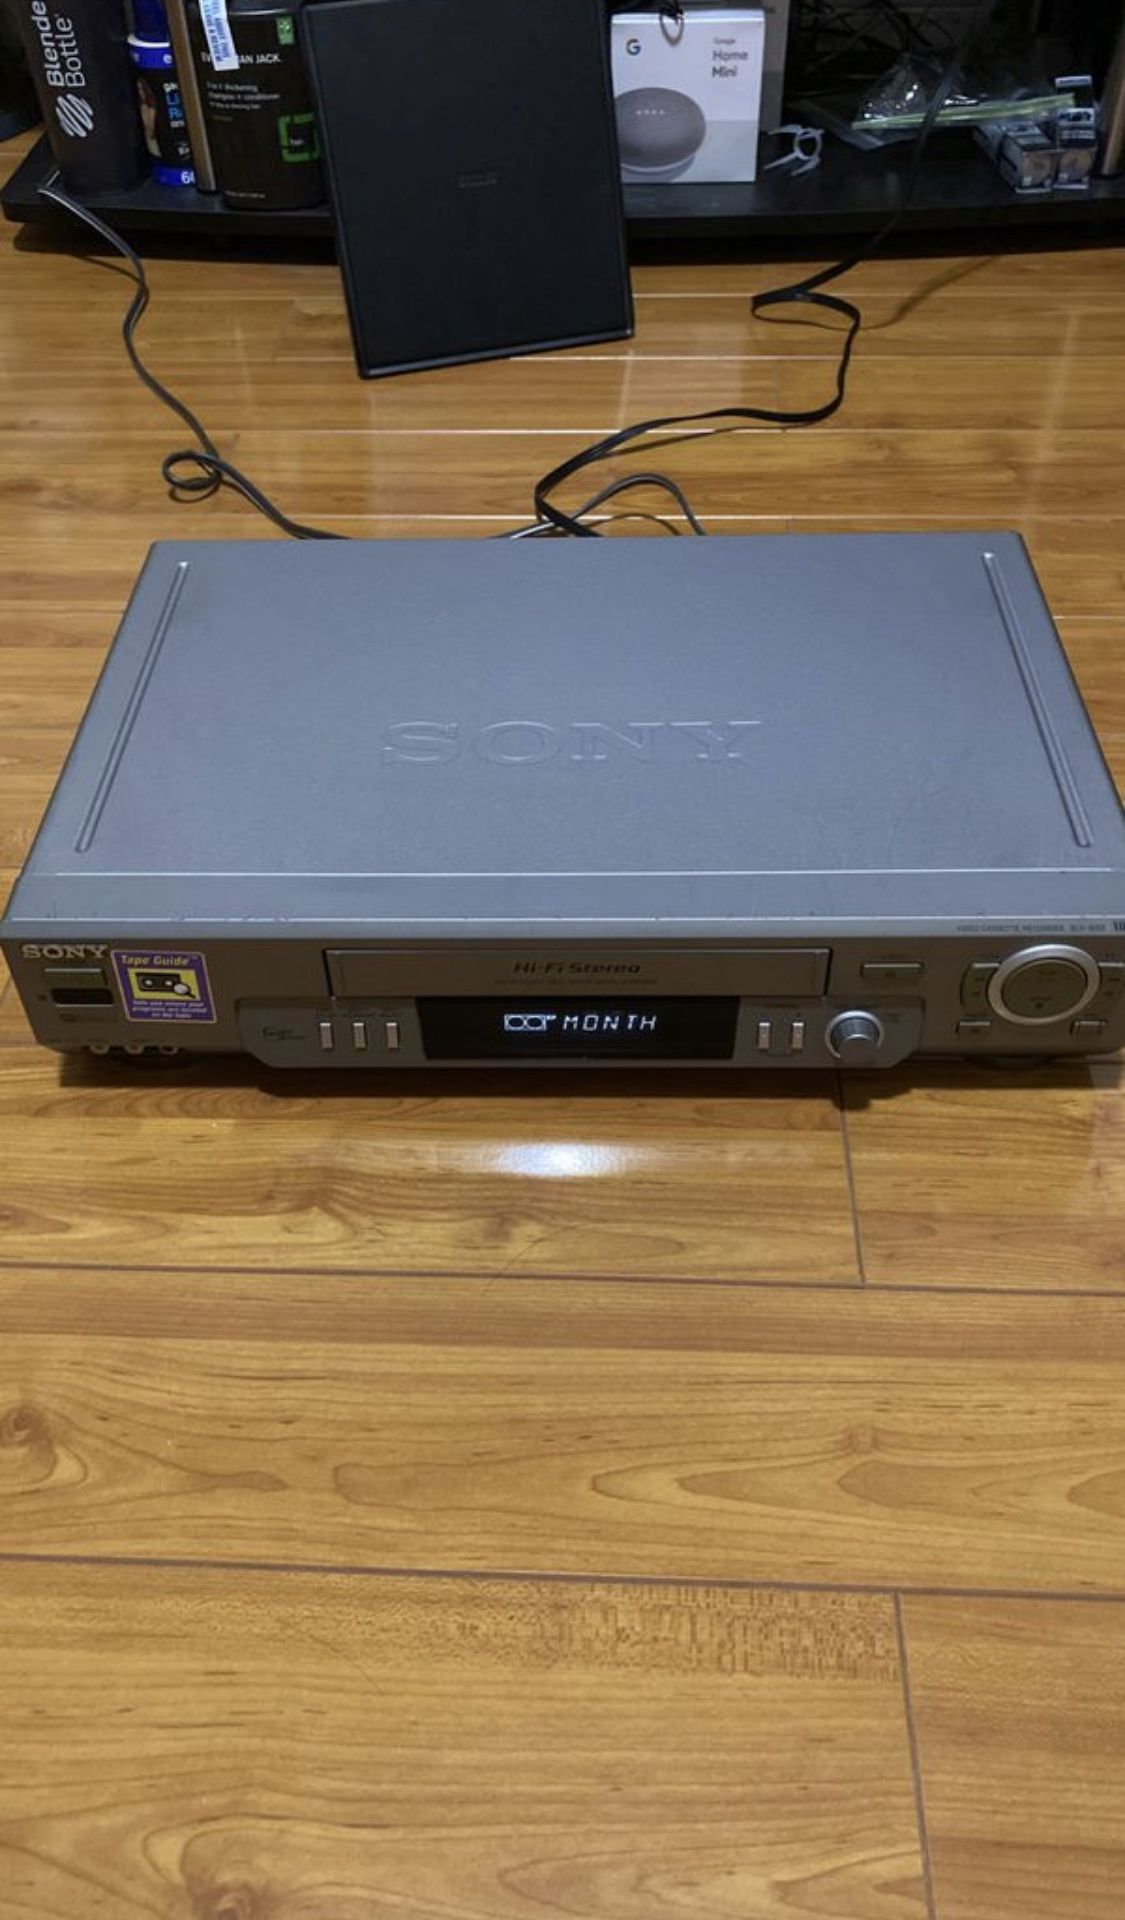 Sony SLV-N80 VCR